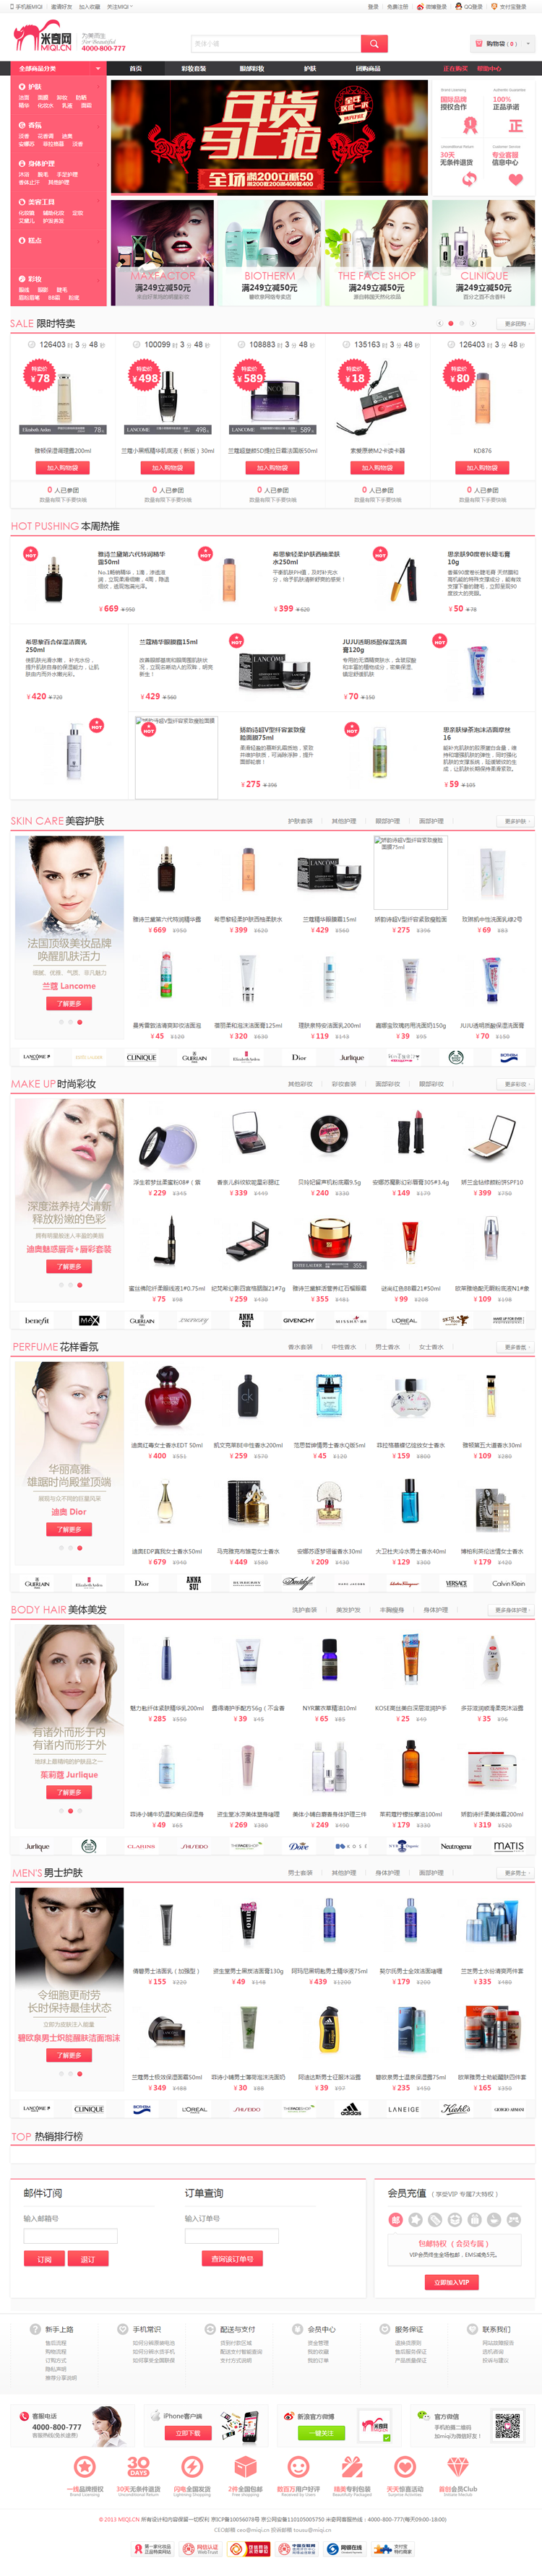 米奇网女性用品化妆品商城购物网站源码 带手机版和微信功能